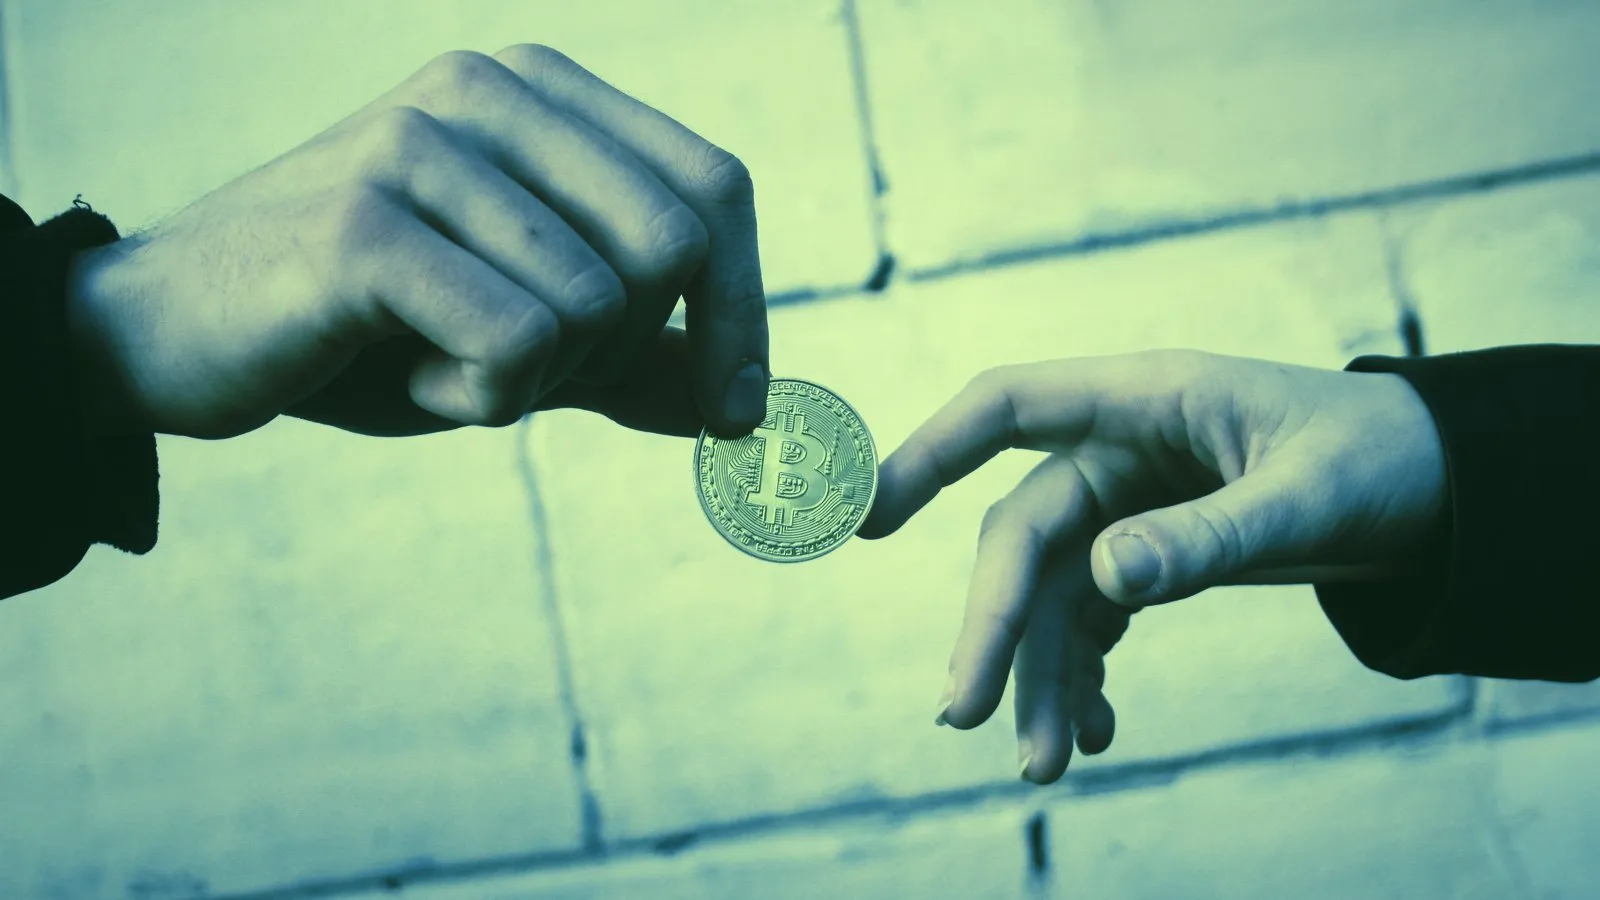 El coste medio de una sola transacción de Bitcoin se ha desplomado desde los altos niveles que siguieron al halving de Bitcoin. Imagen: Shutterstock